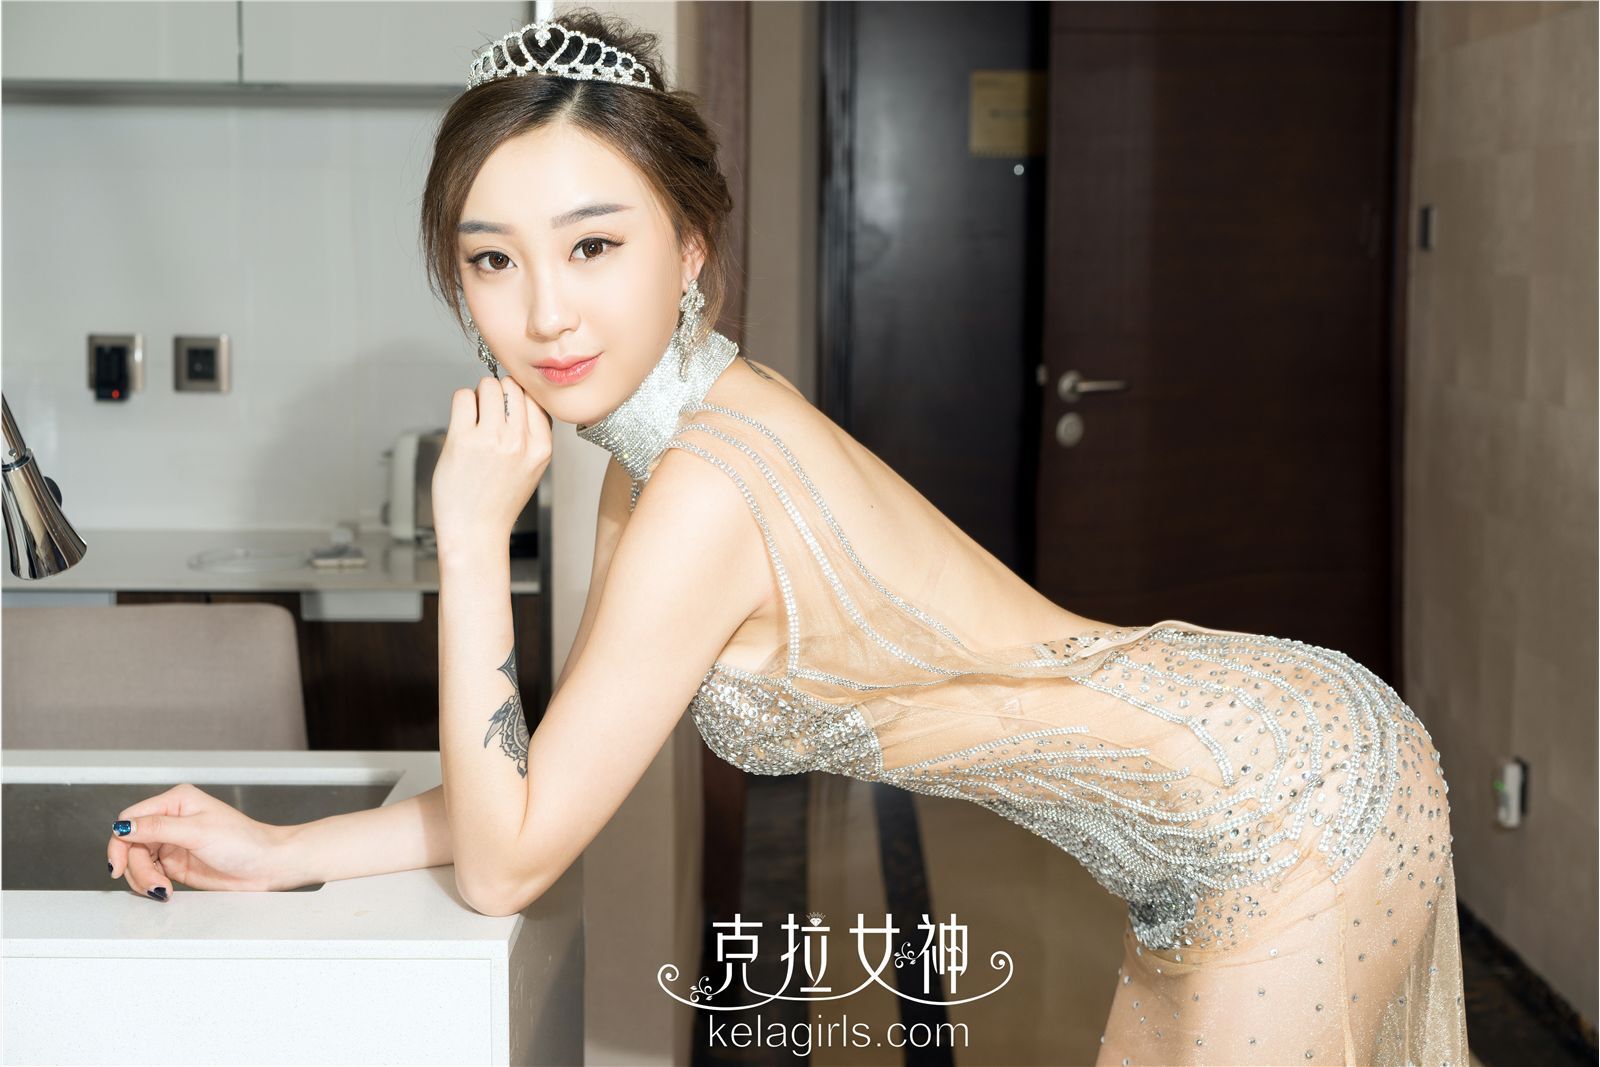 [Kela girls] Kela goddess 2017-02-18 Zhang Xi dance Princess